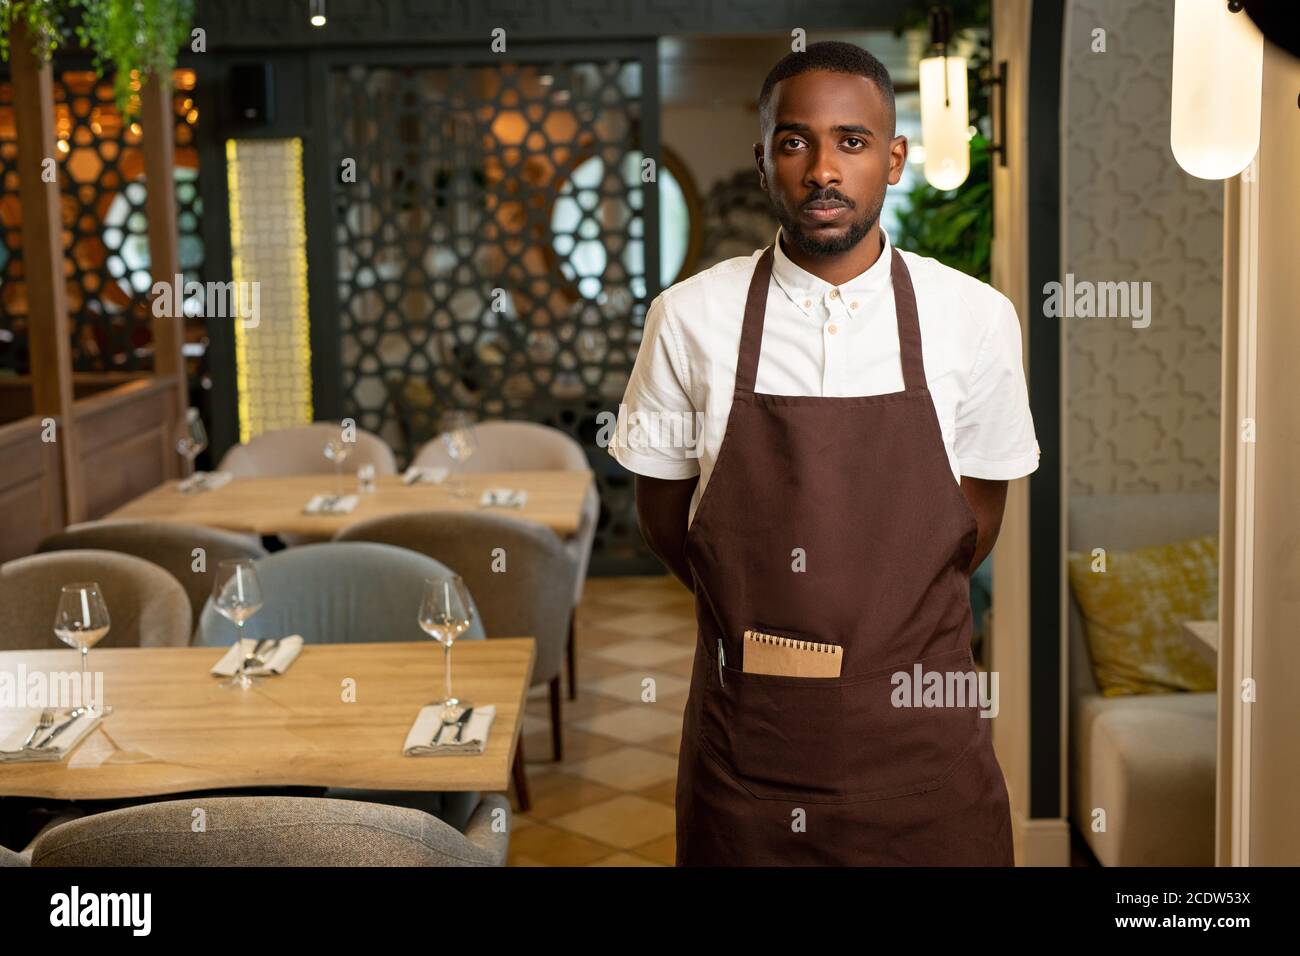 Jeune serveur d'origine africaine en uniforme debout dans l'allée entre les  tables Photo Stock - Alamy